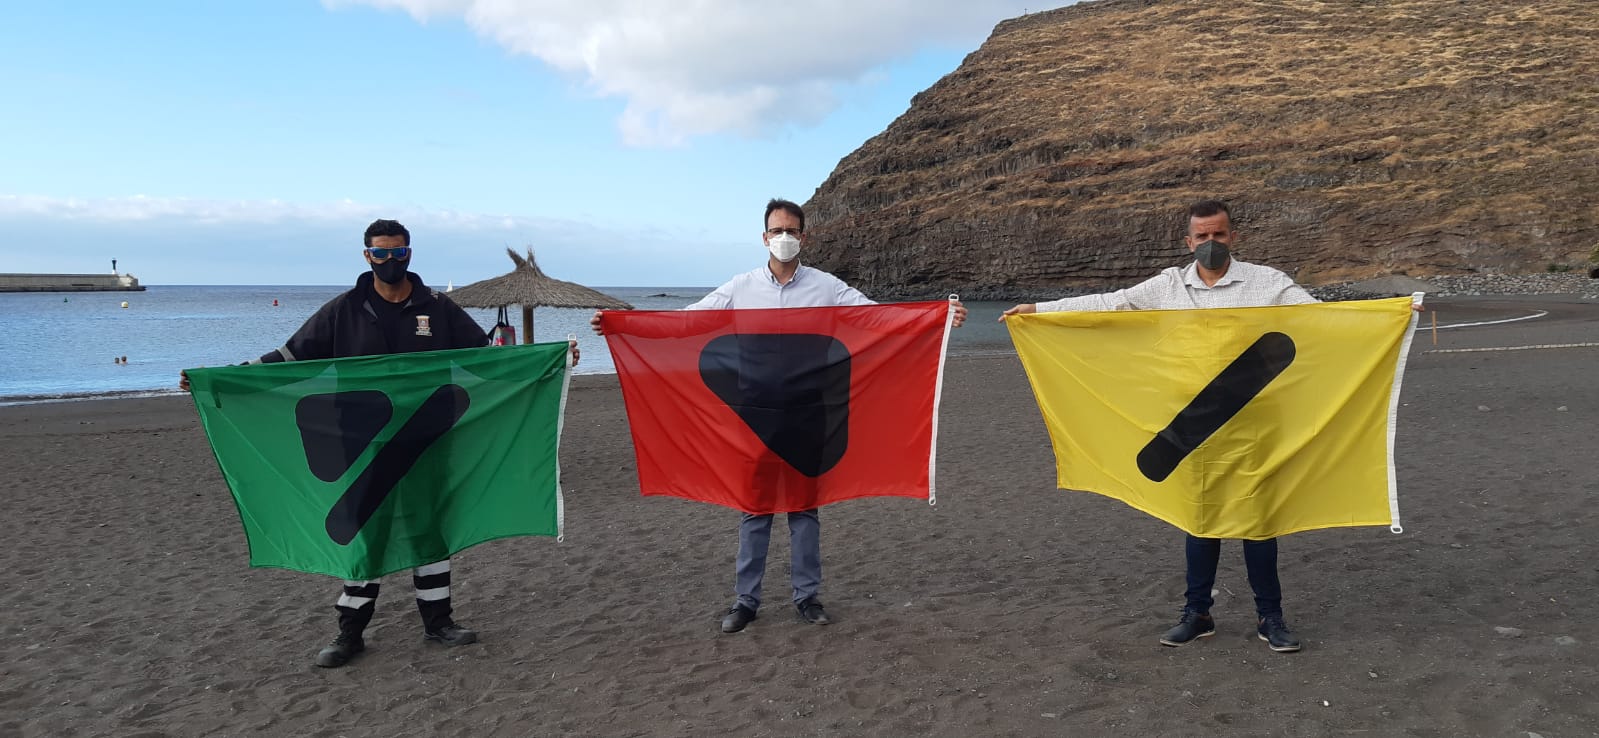 Banderas inclusivas para las personas daltónicas en las playas de SS de La Gomera / CanariasNoticias.es